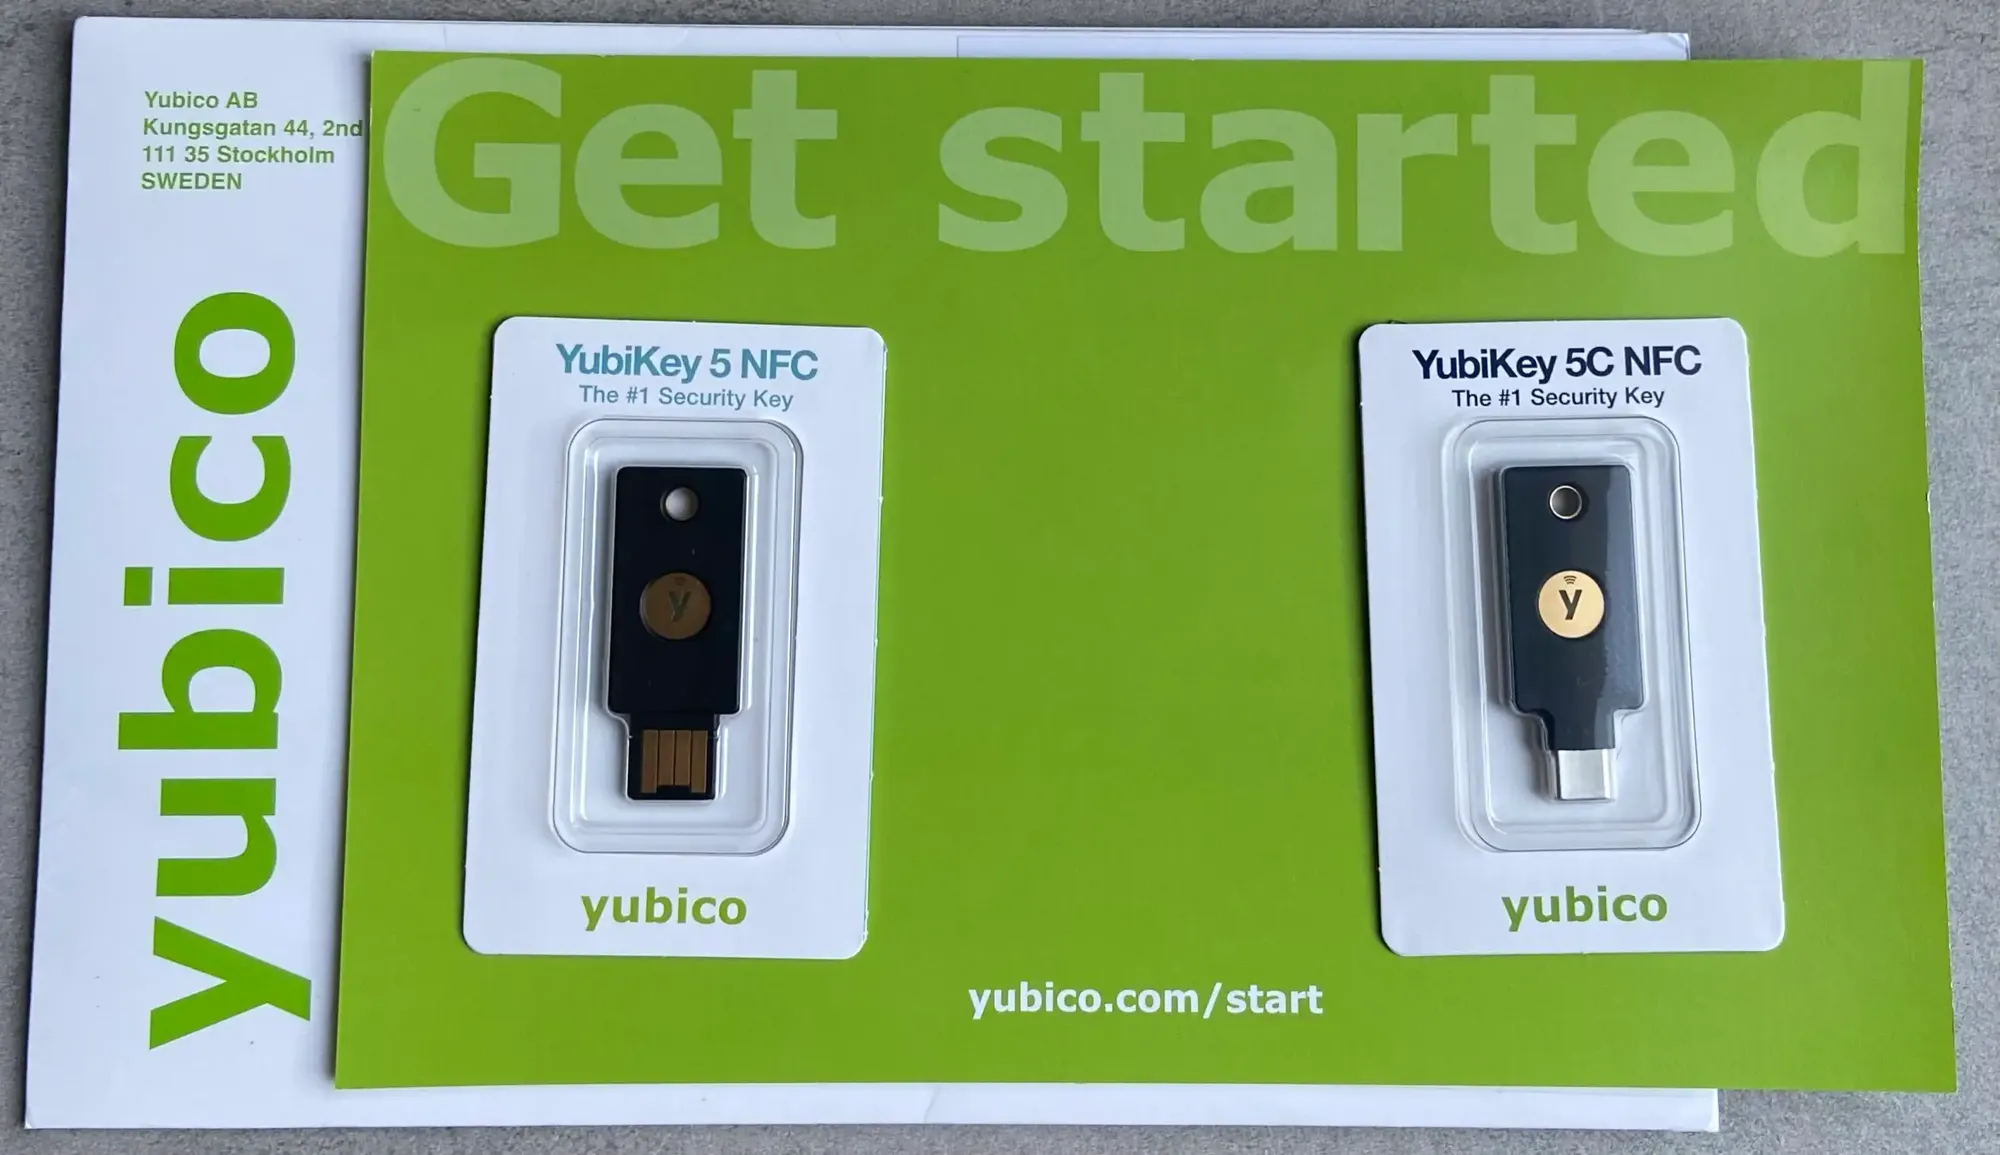 La Yubikey 5C NFC est la clé d'authentification ultime - ZDNet